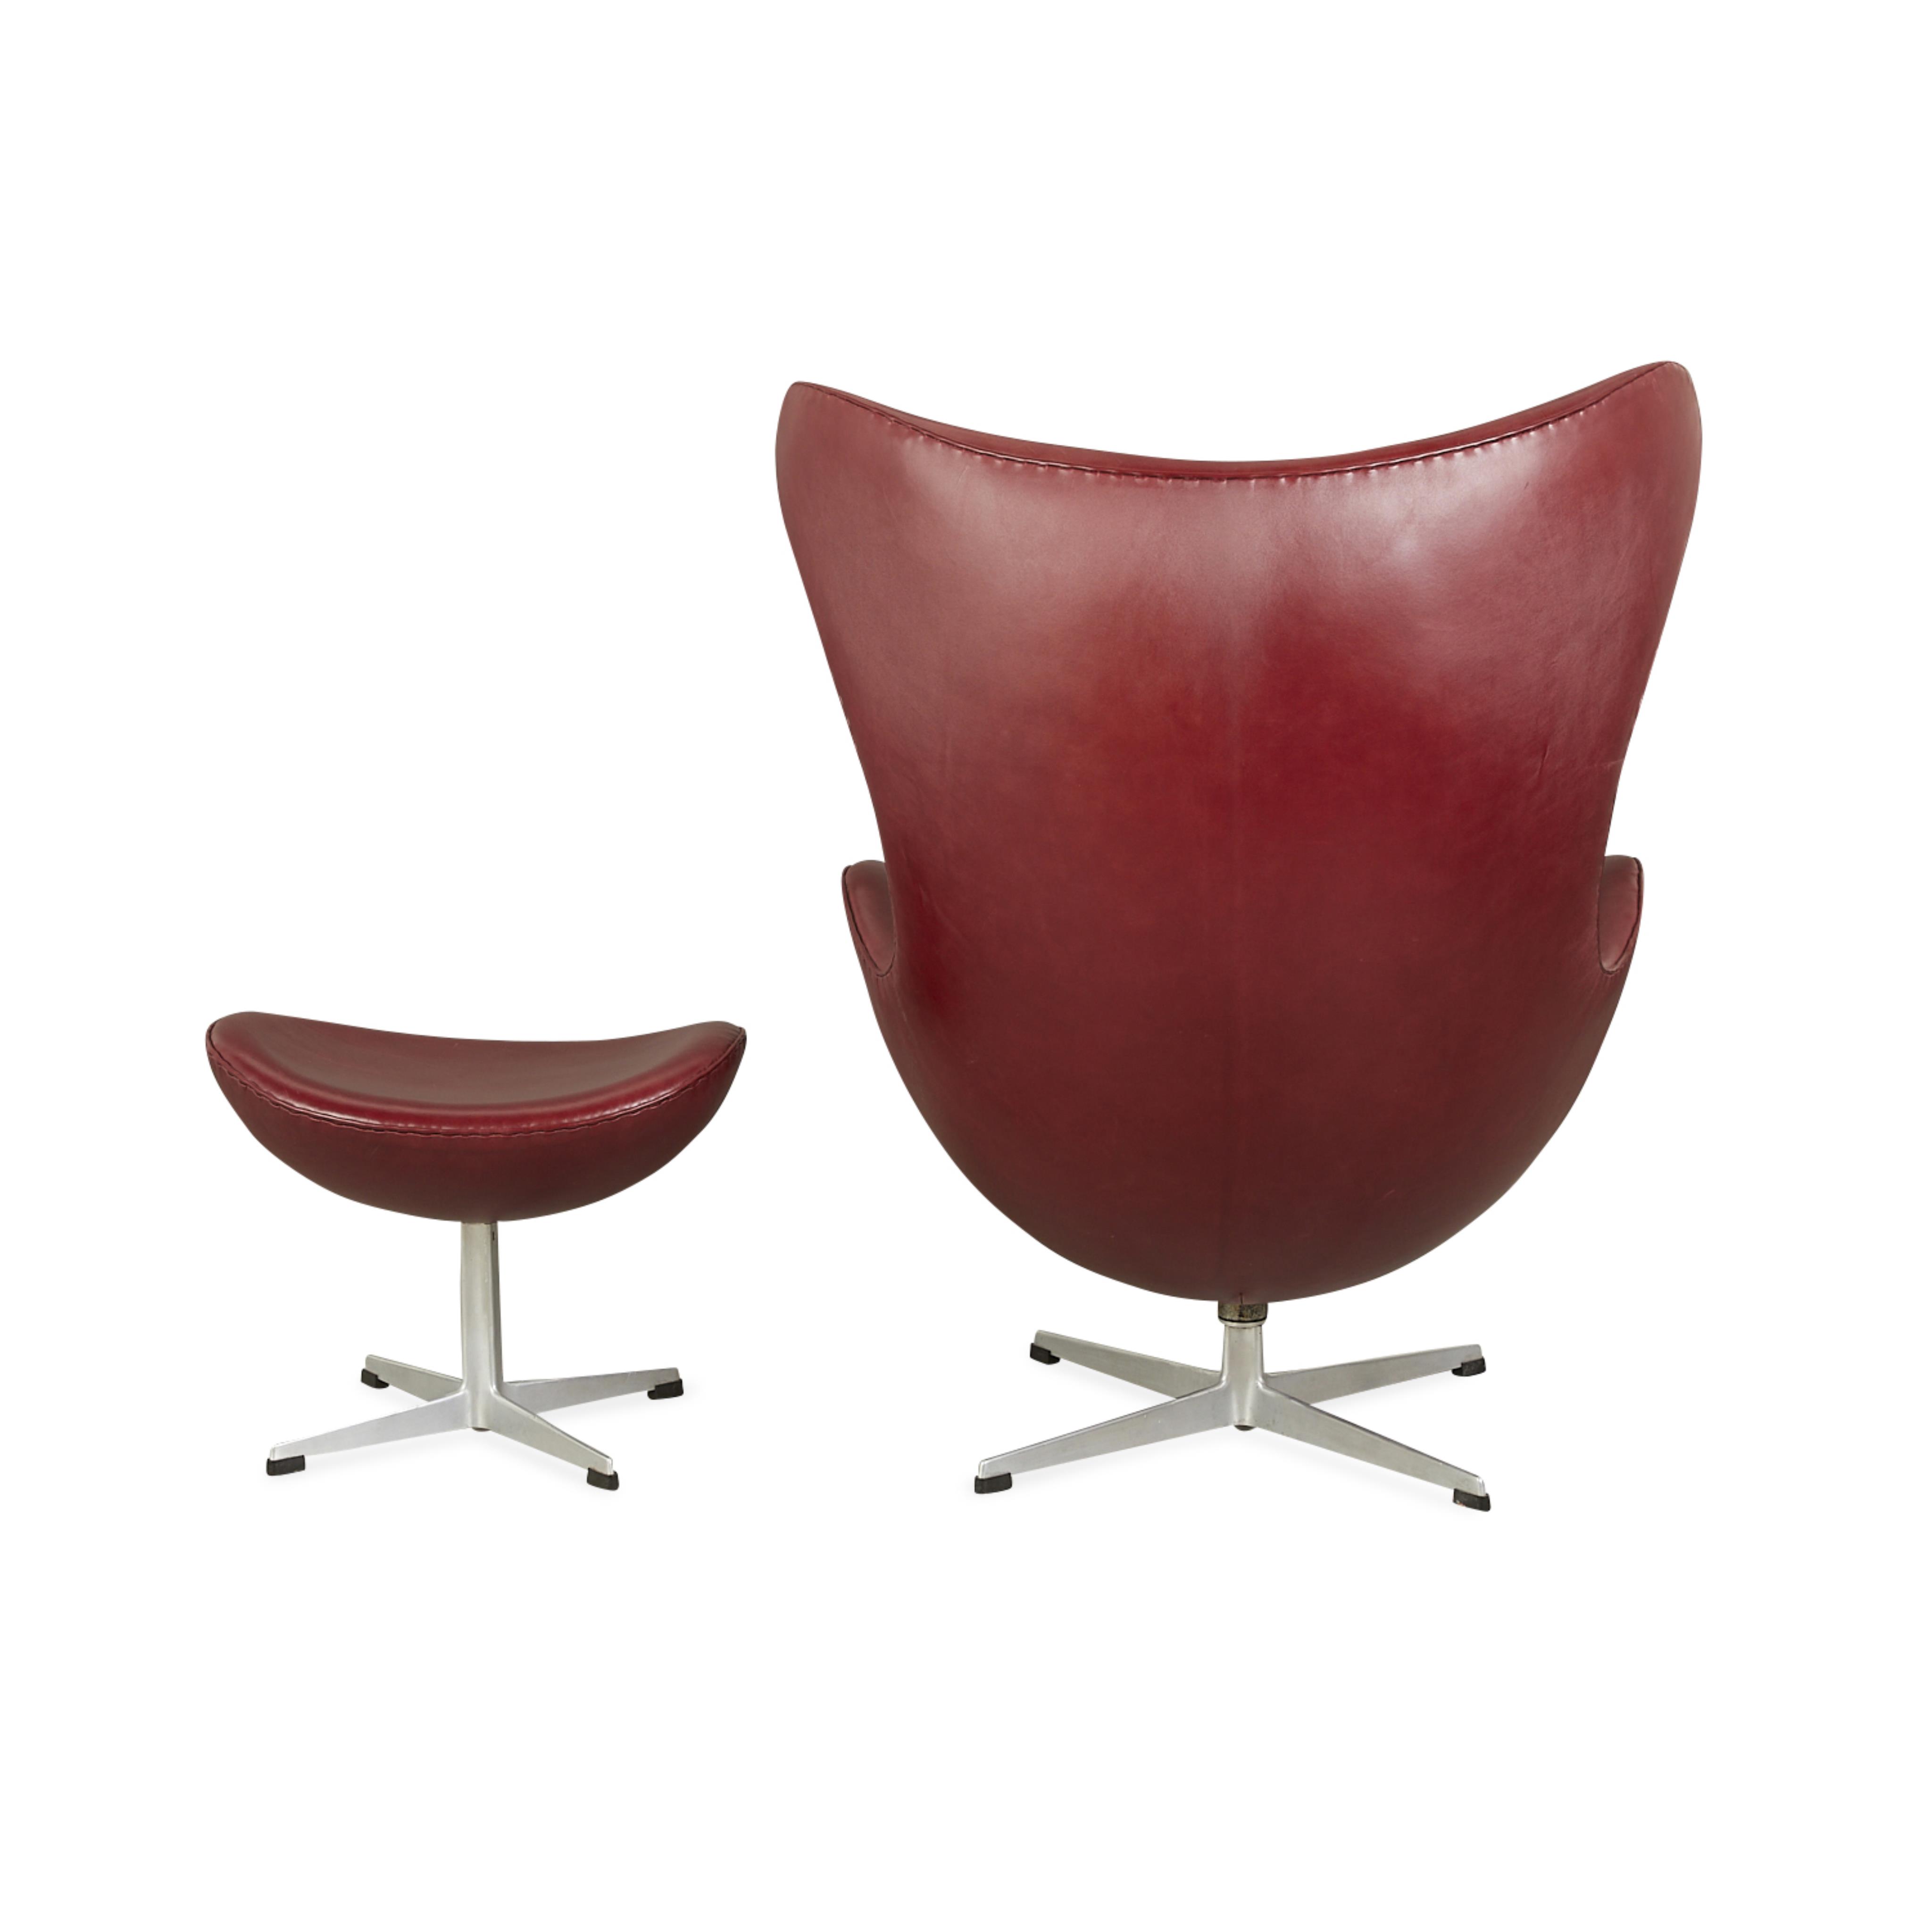 Arne Jacobsen for Hansen Leather Egg Chair 1964 - Image 6 of 17